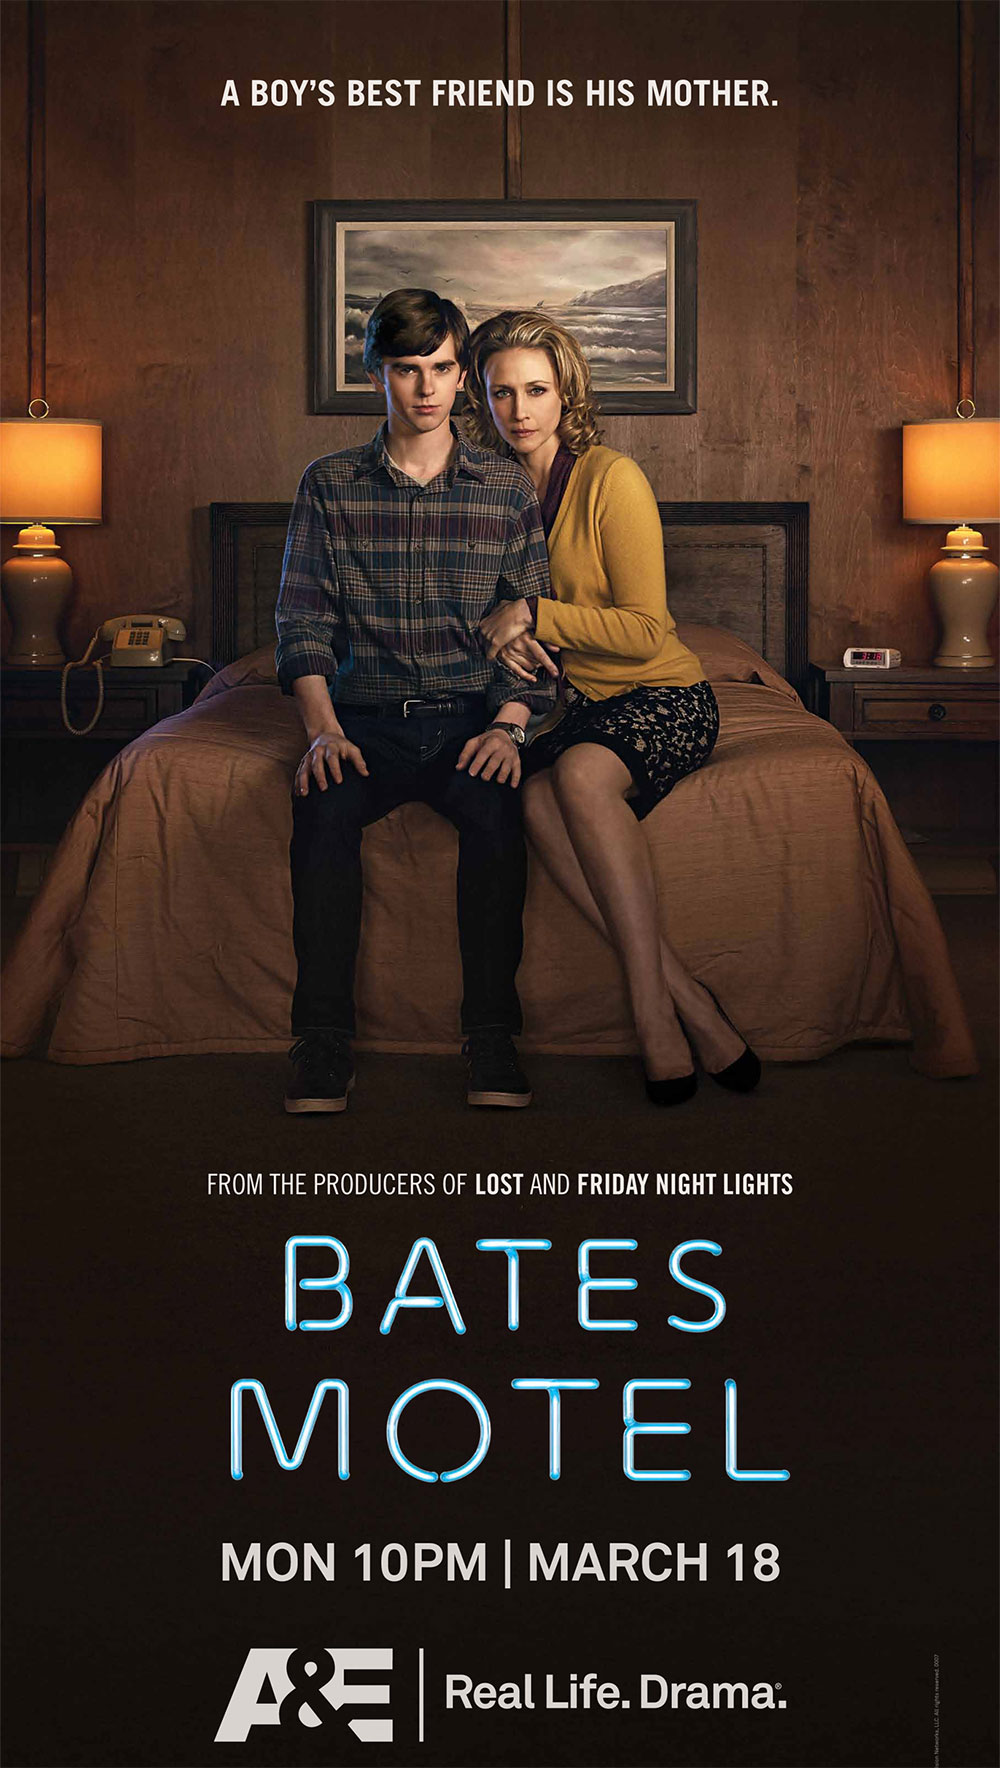 Bates Motel Carlton Cuse Et Kerry Ehrin Parlent De La Série